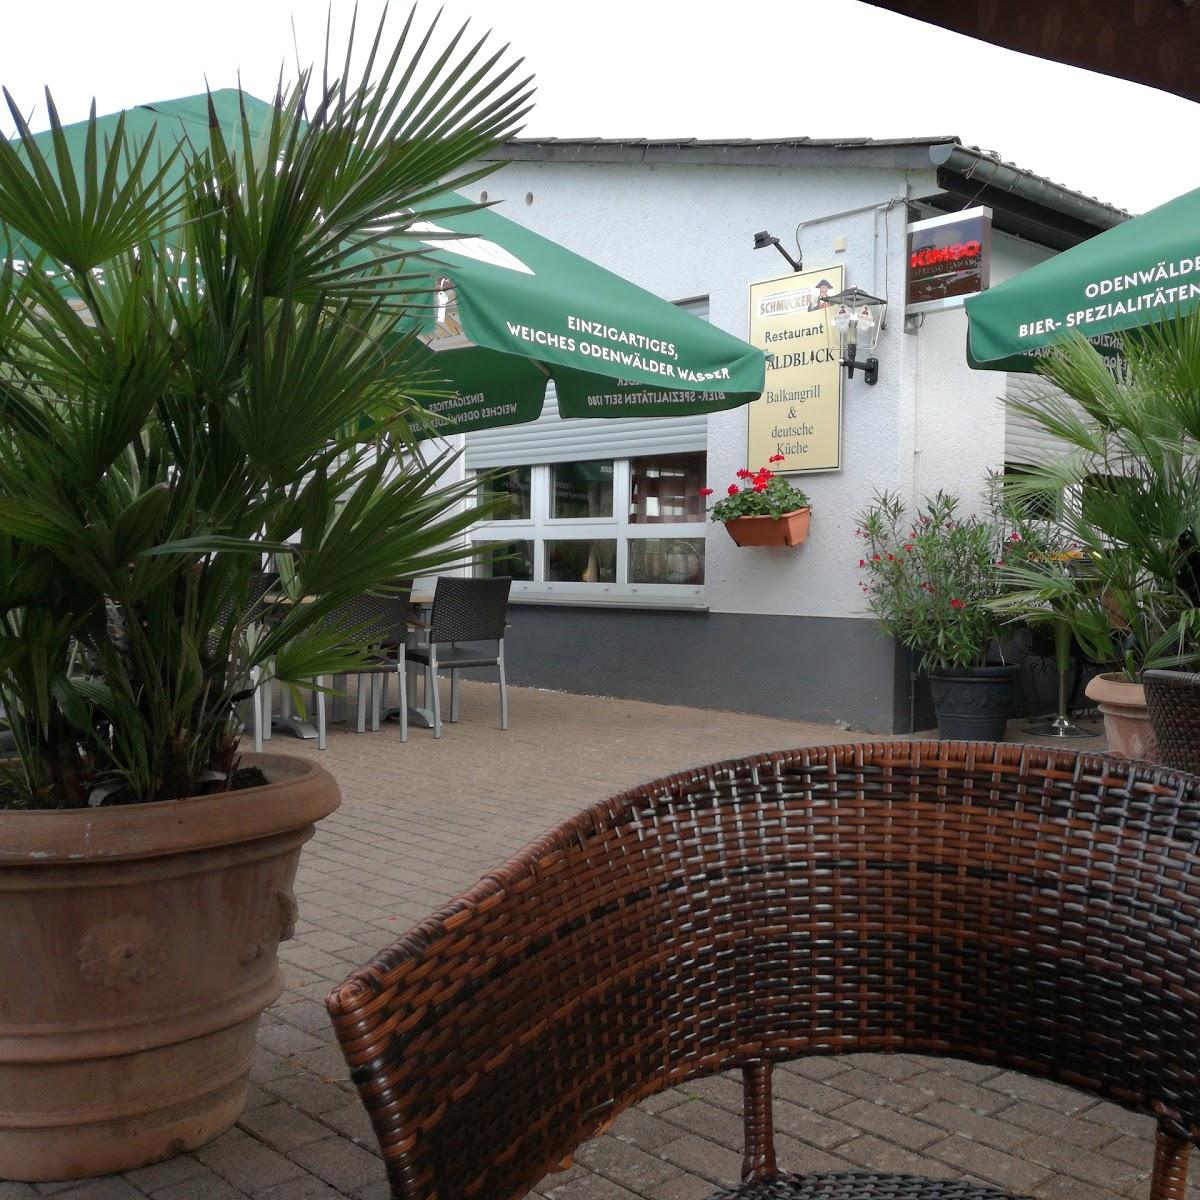 Restaurant "Zum Waldblick" in Weiterstadt